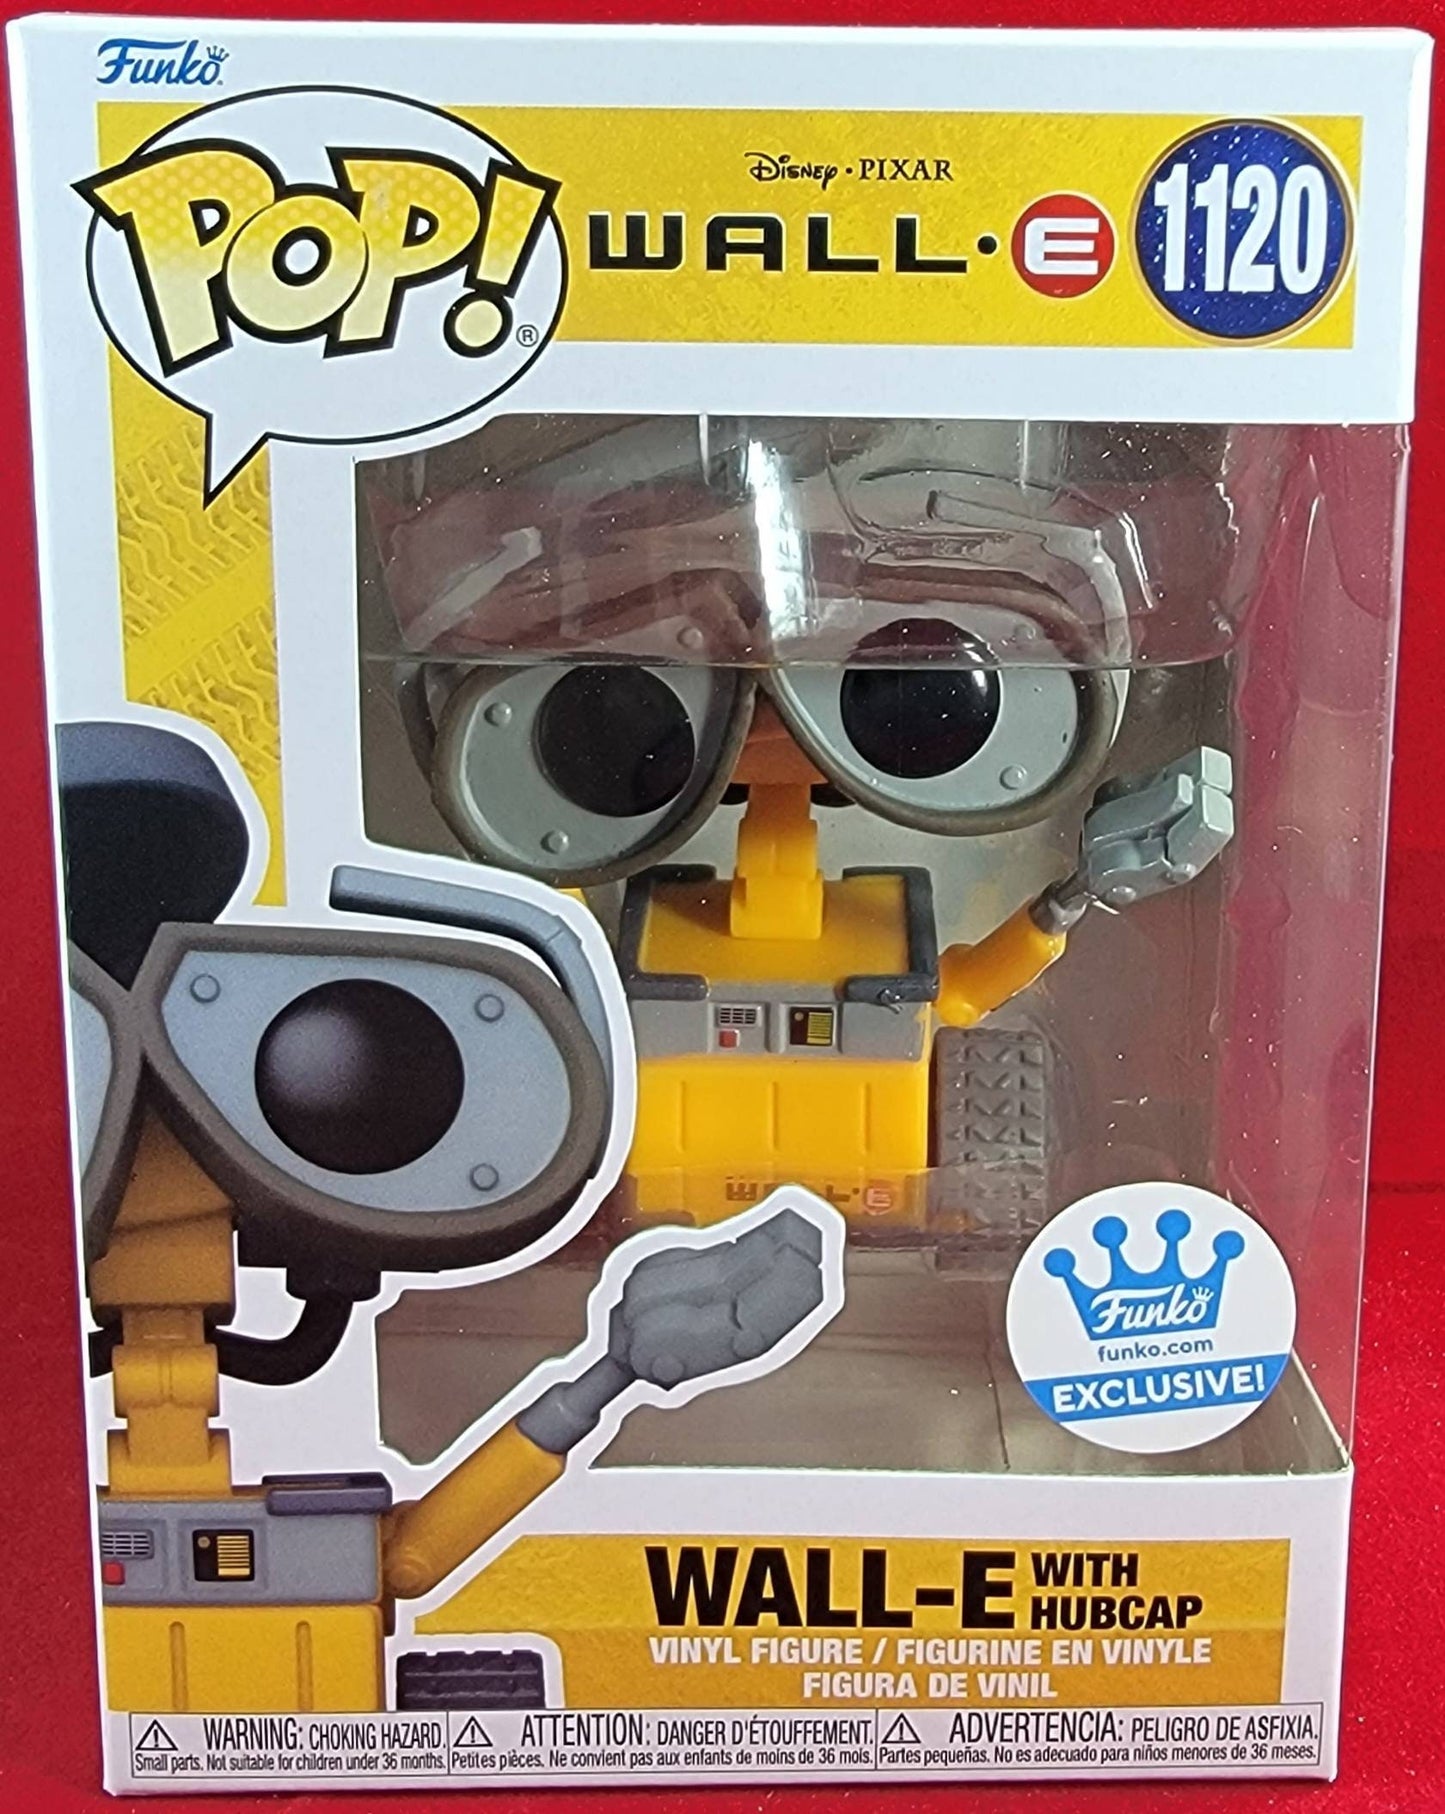 Wall-e funko exclusive # 1120 (nib)